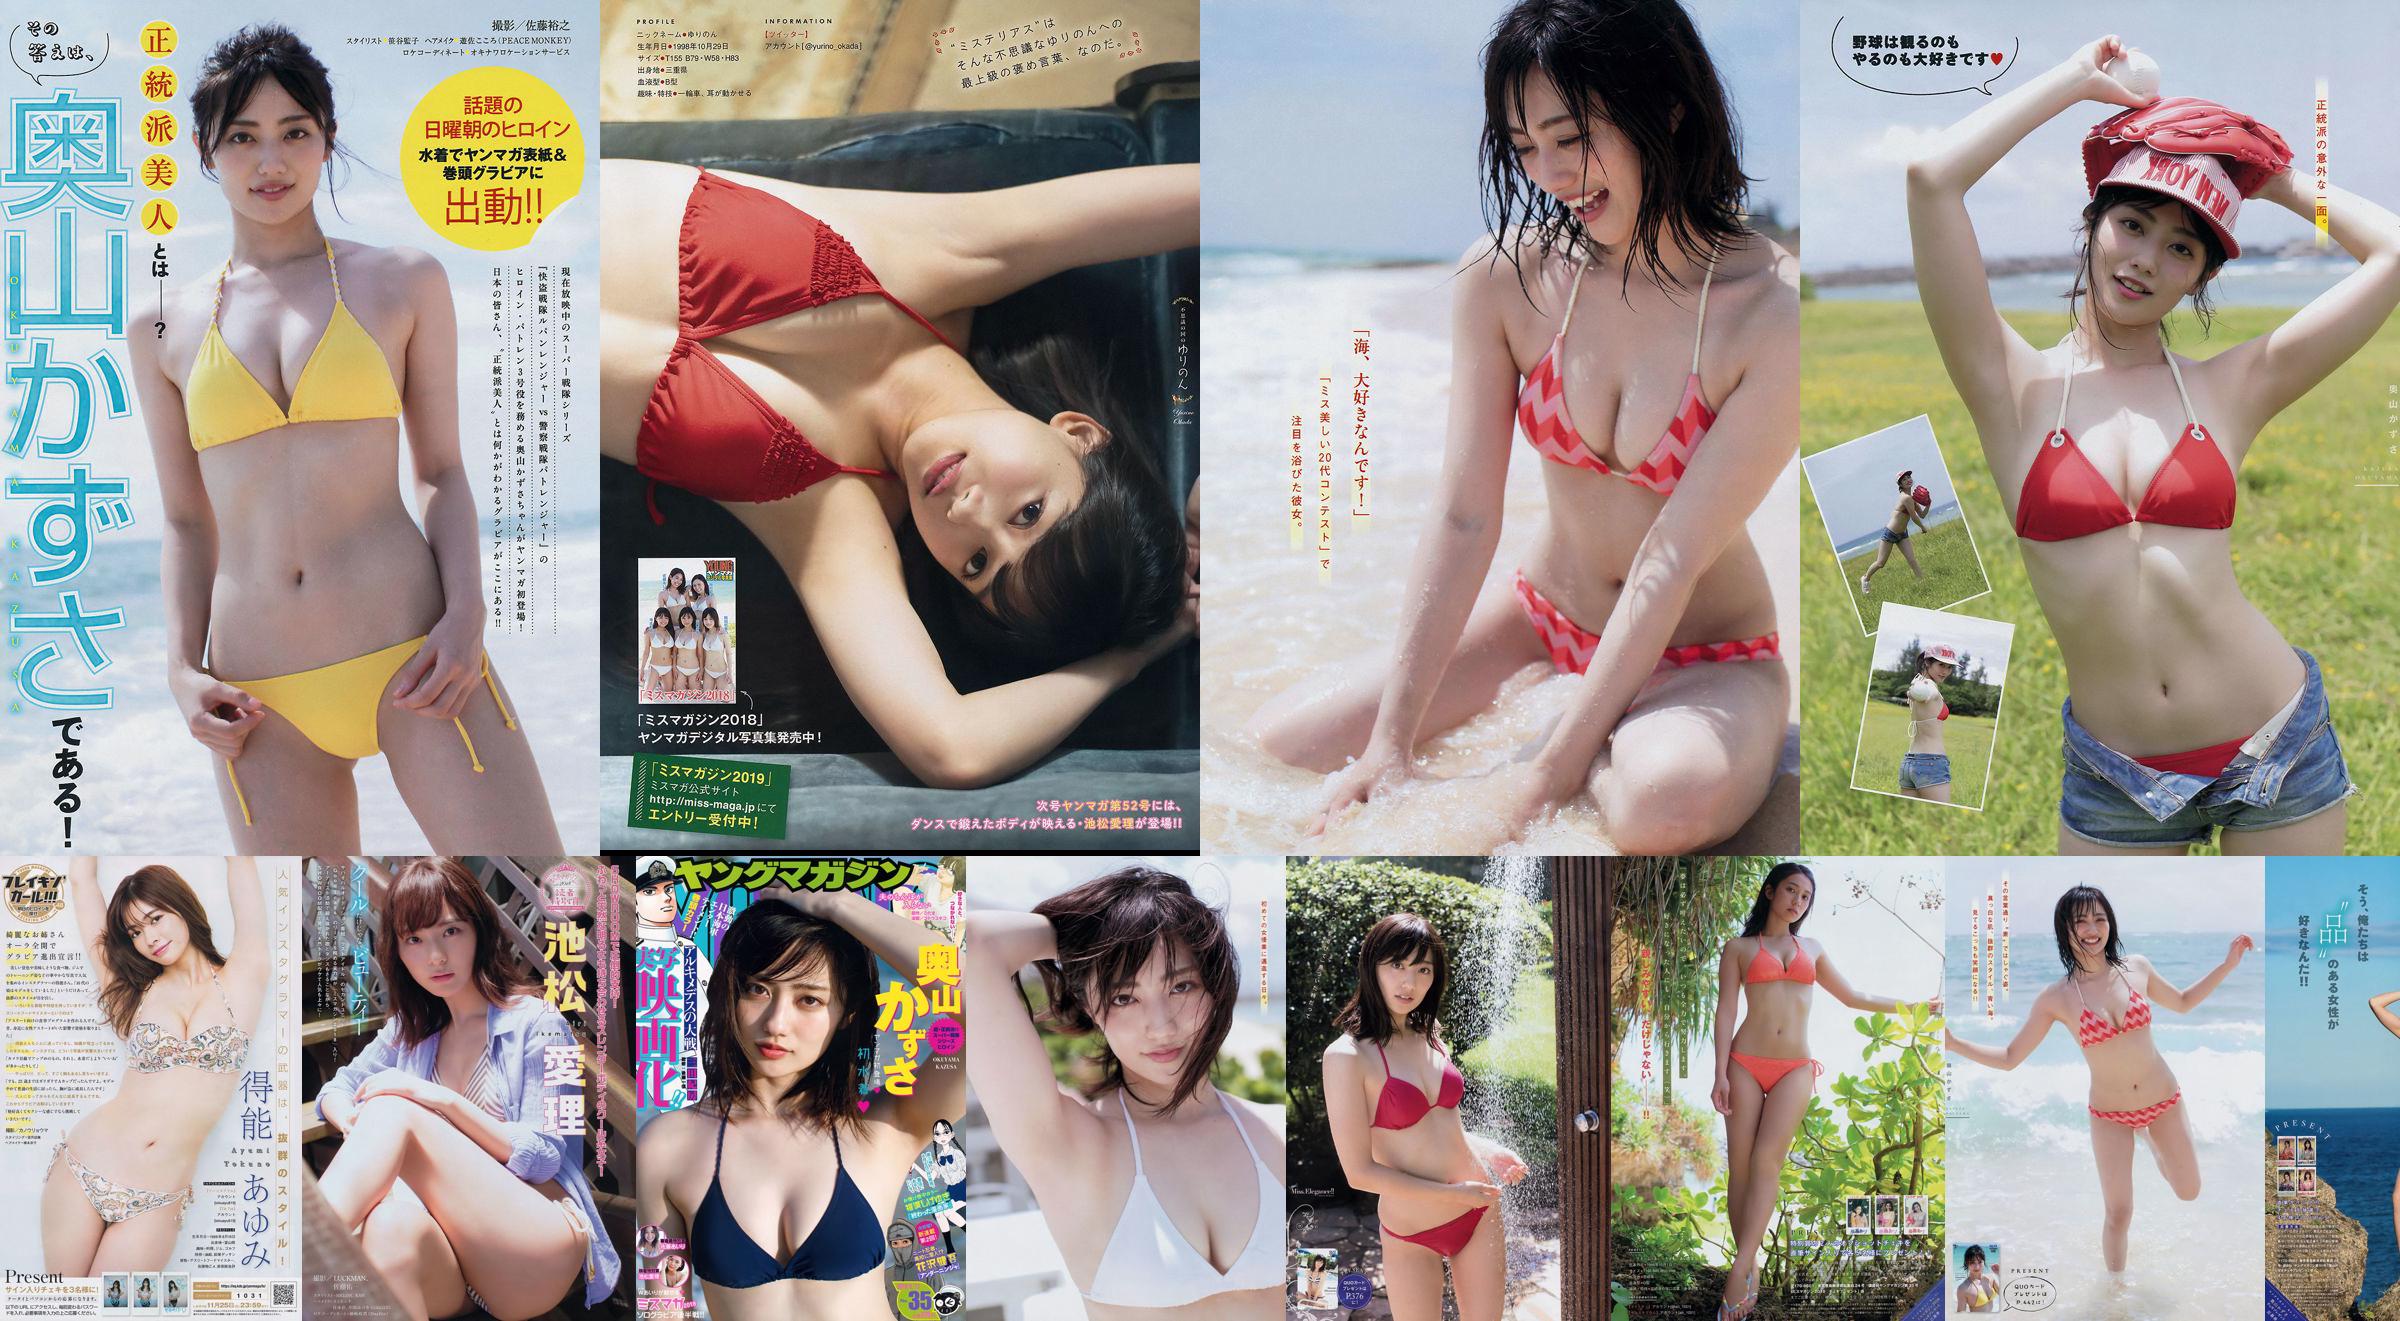 [Young Magazine] Kazusa Okuyama Airi Sato Airi Ikematsu 2018 No.35 Foto Mori No.94c68b Pagina 8